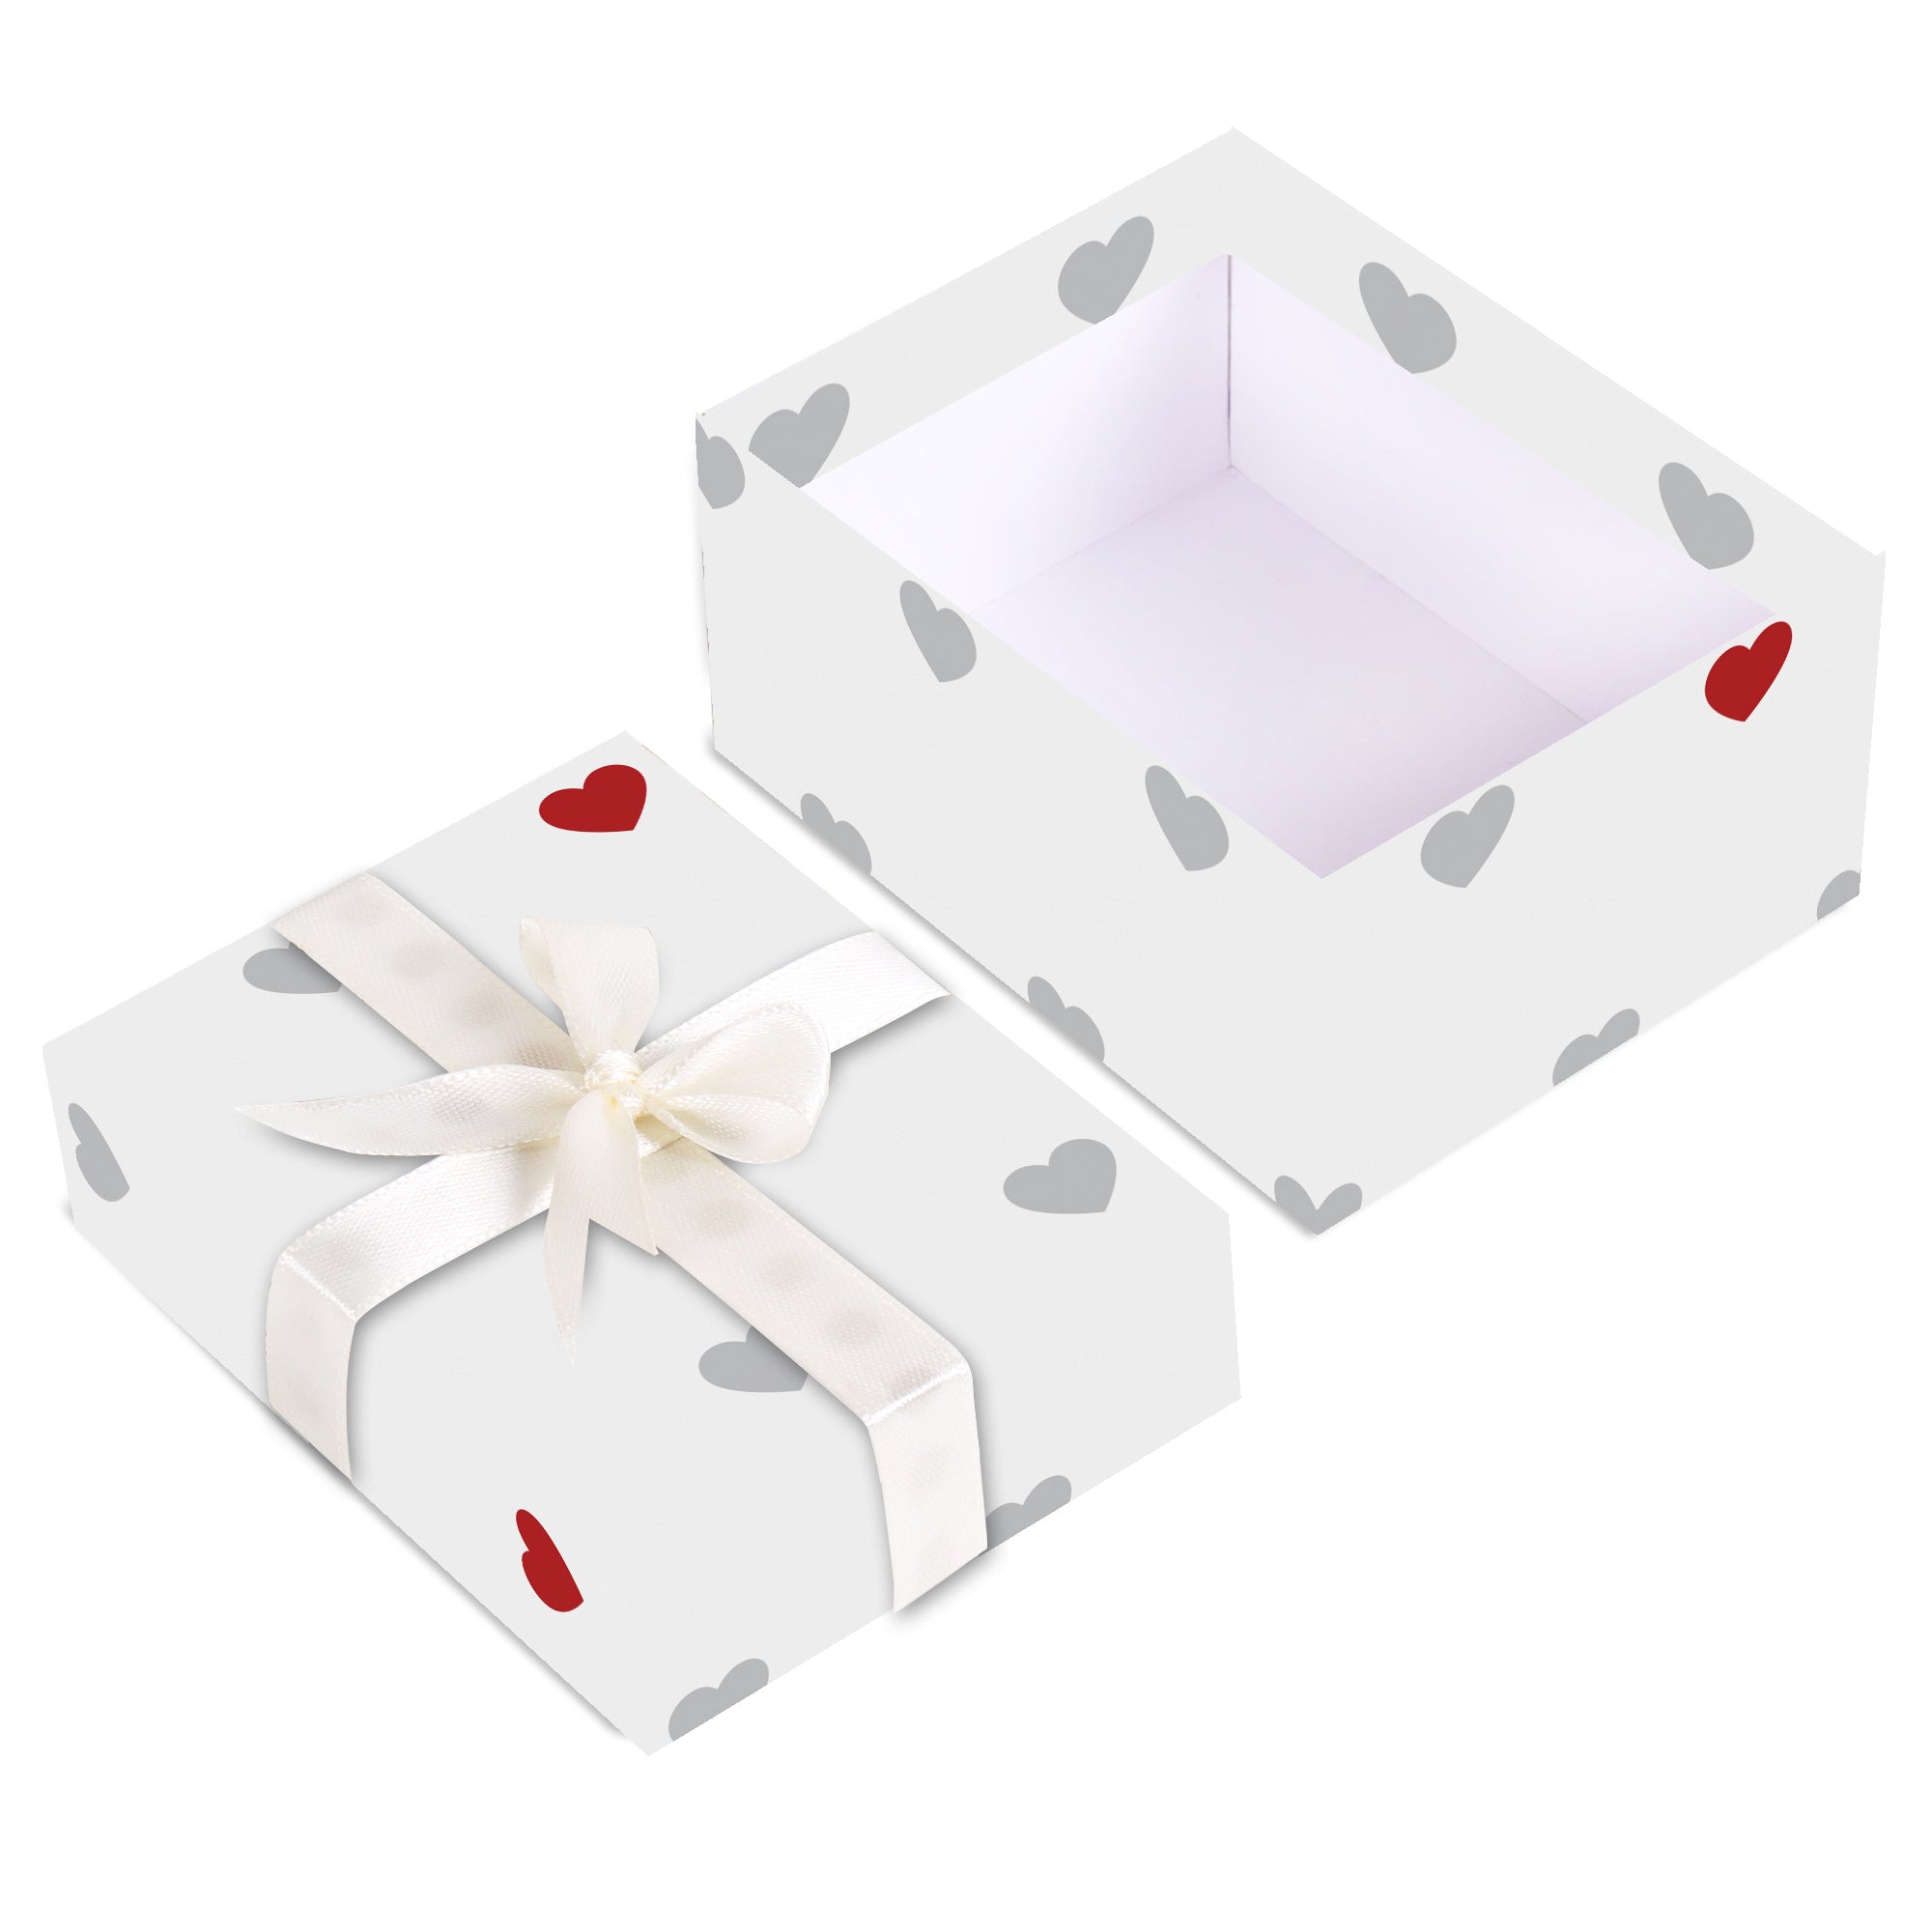 Gift Box Magical Love With Bow L10.5 X W8 X D5.4(cm)  1pc